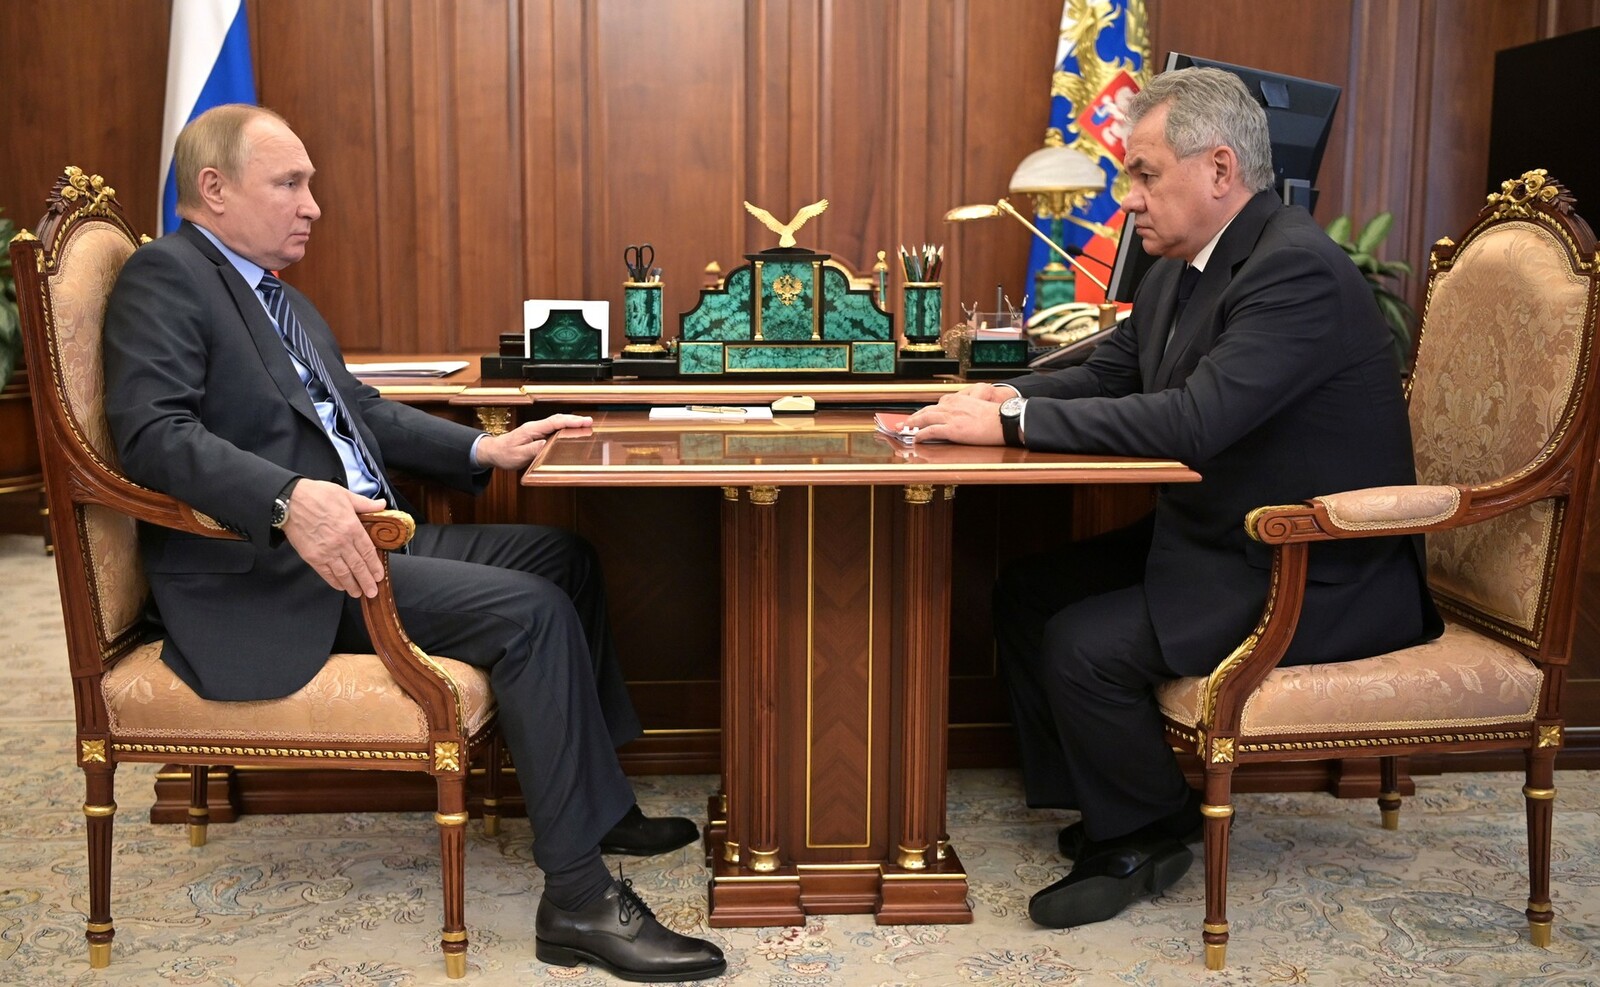 Встреча с Министром обороны Сергеем Шойгу